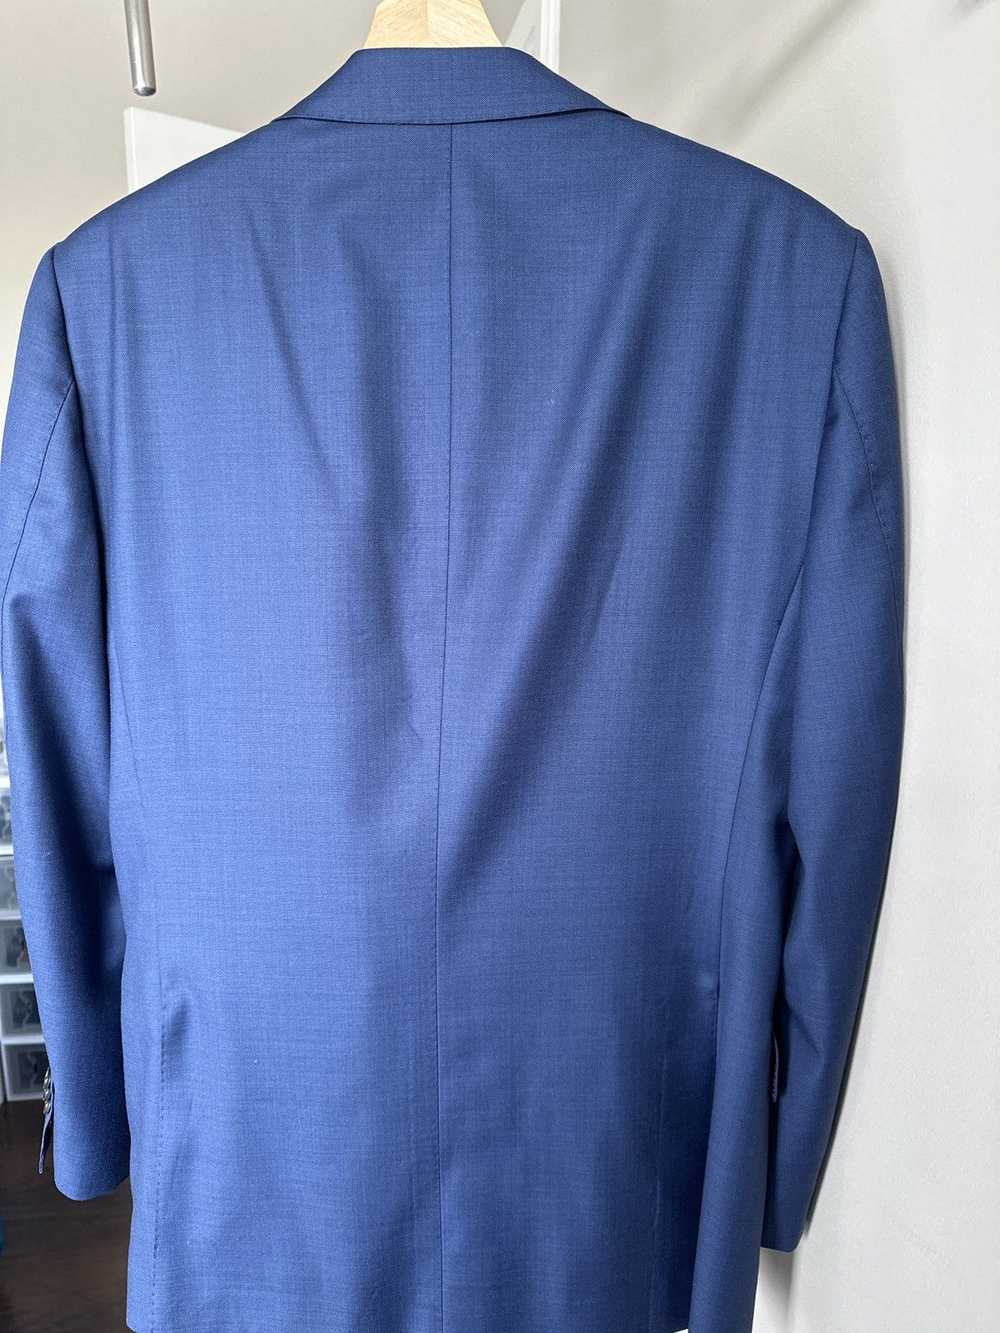 Suitsupply Blue Lazio Suit - image 7